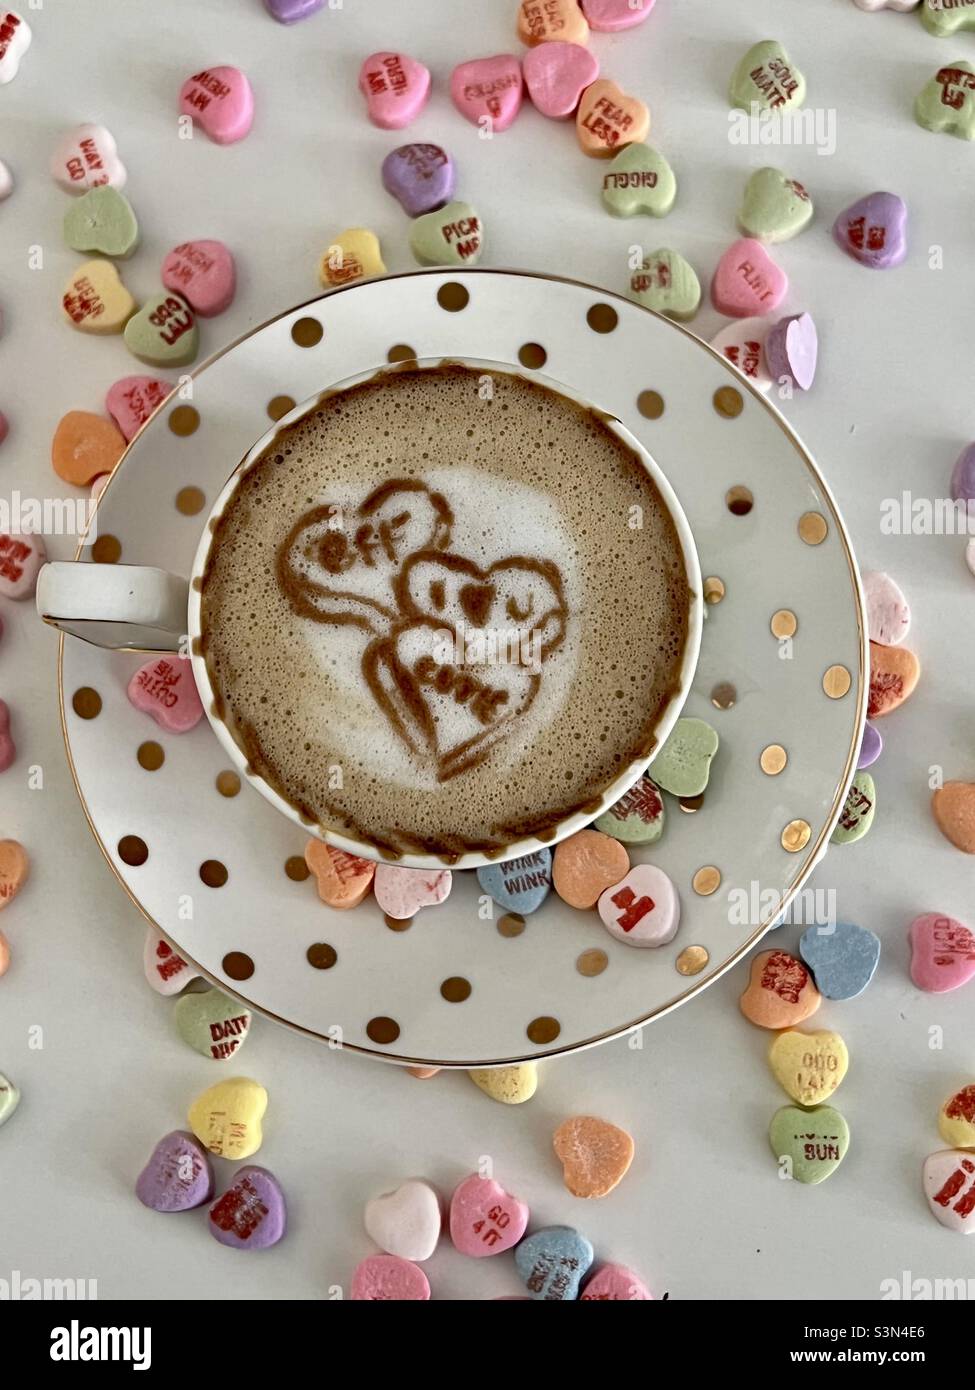 Art de latte de coeur de bonbon avec coeurs de bonbon pour la Saint-Valentin Banque D'Images